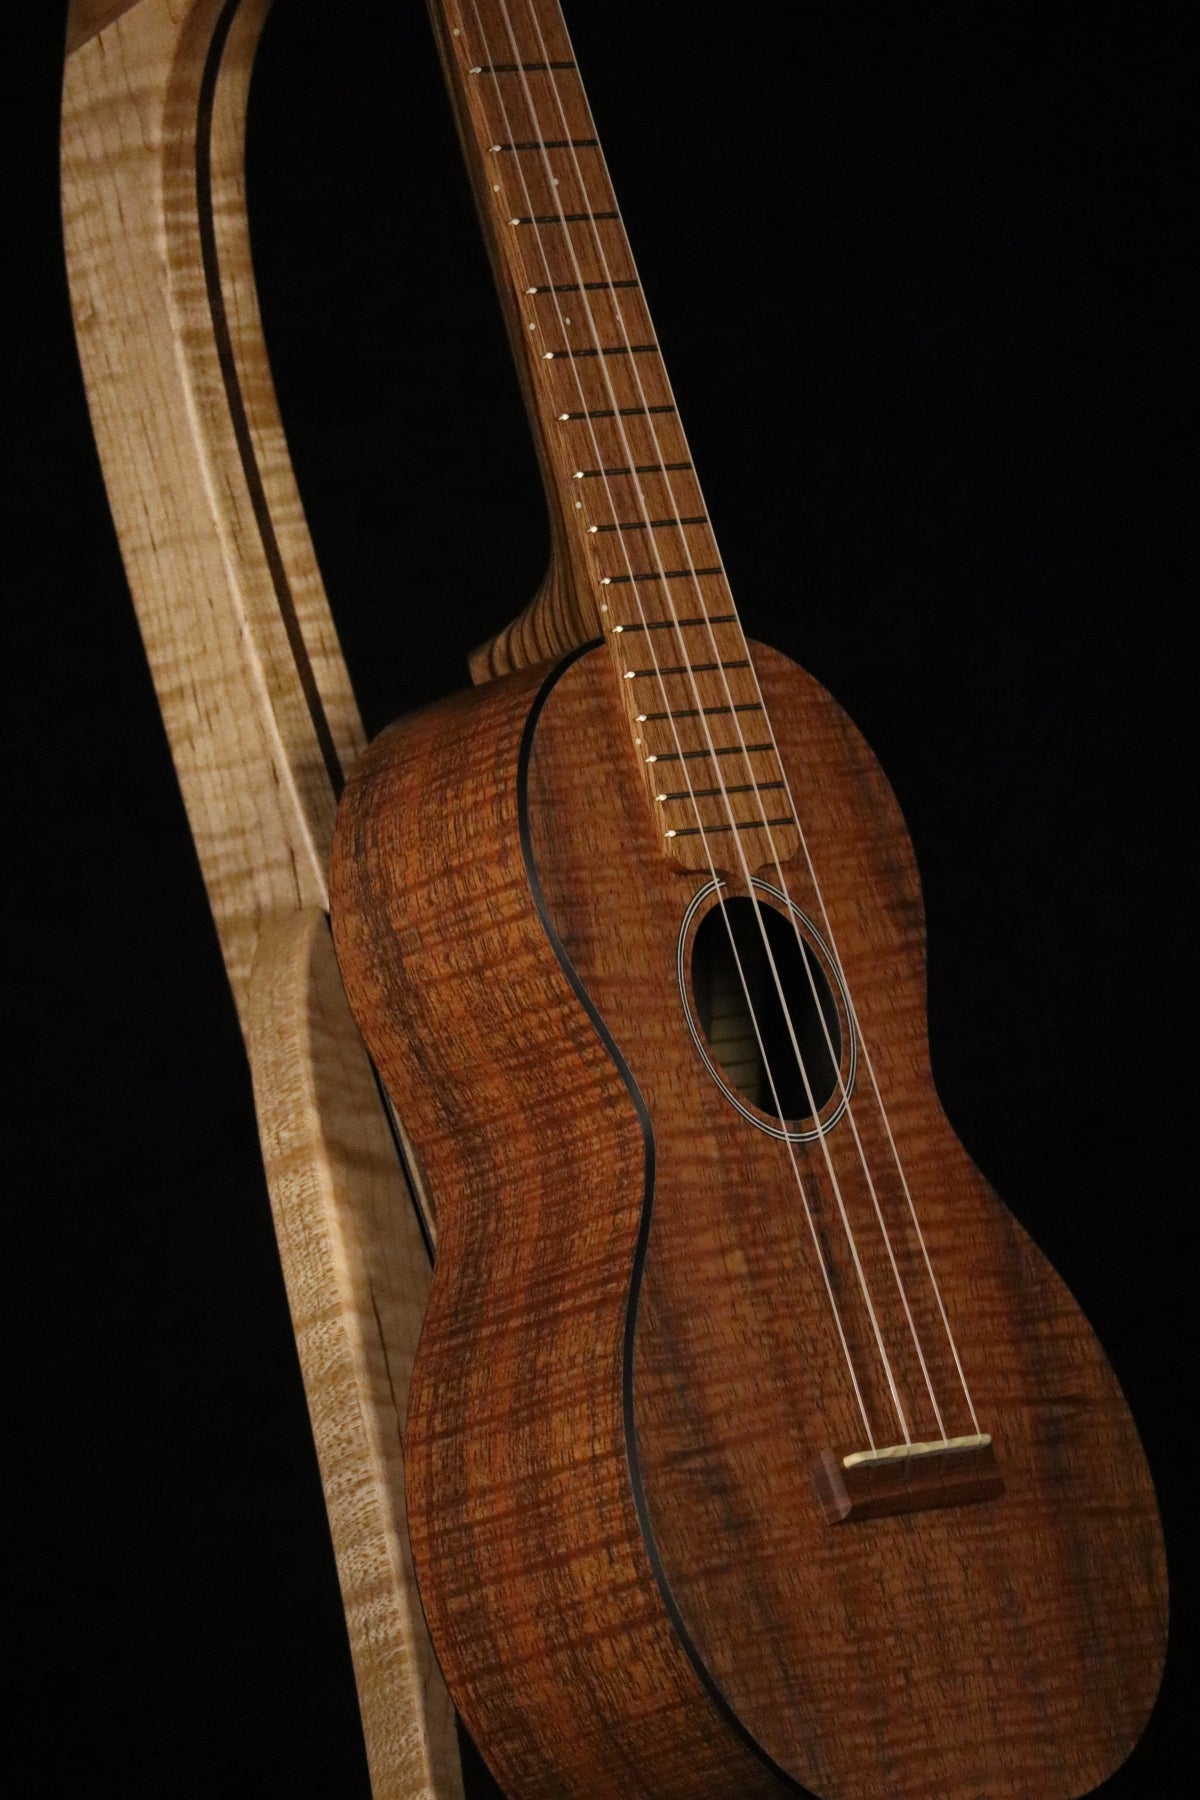 Folding curly maple and walnut wood ukulele floor stand closeup front image with Martin ukulele